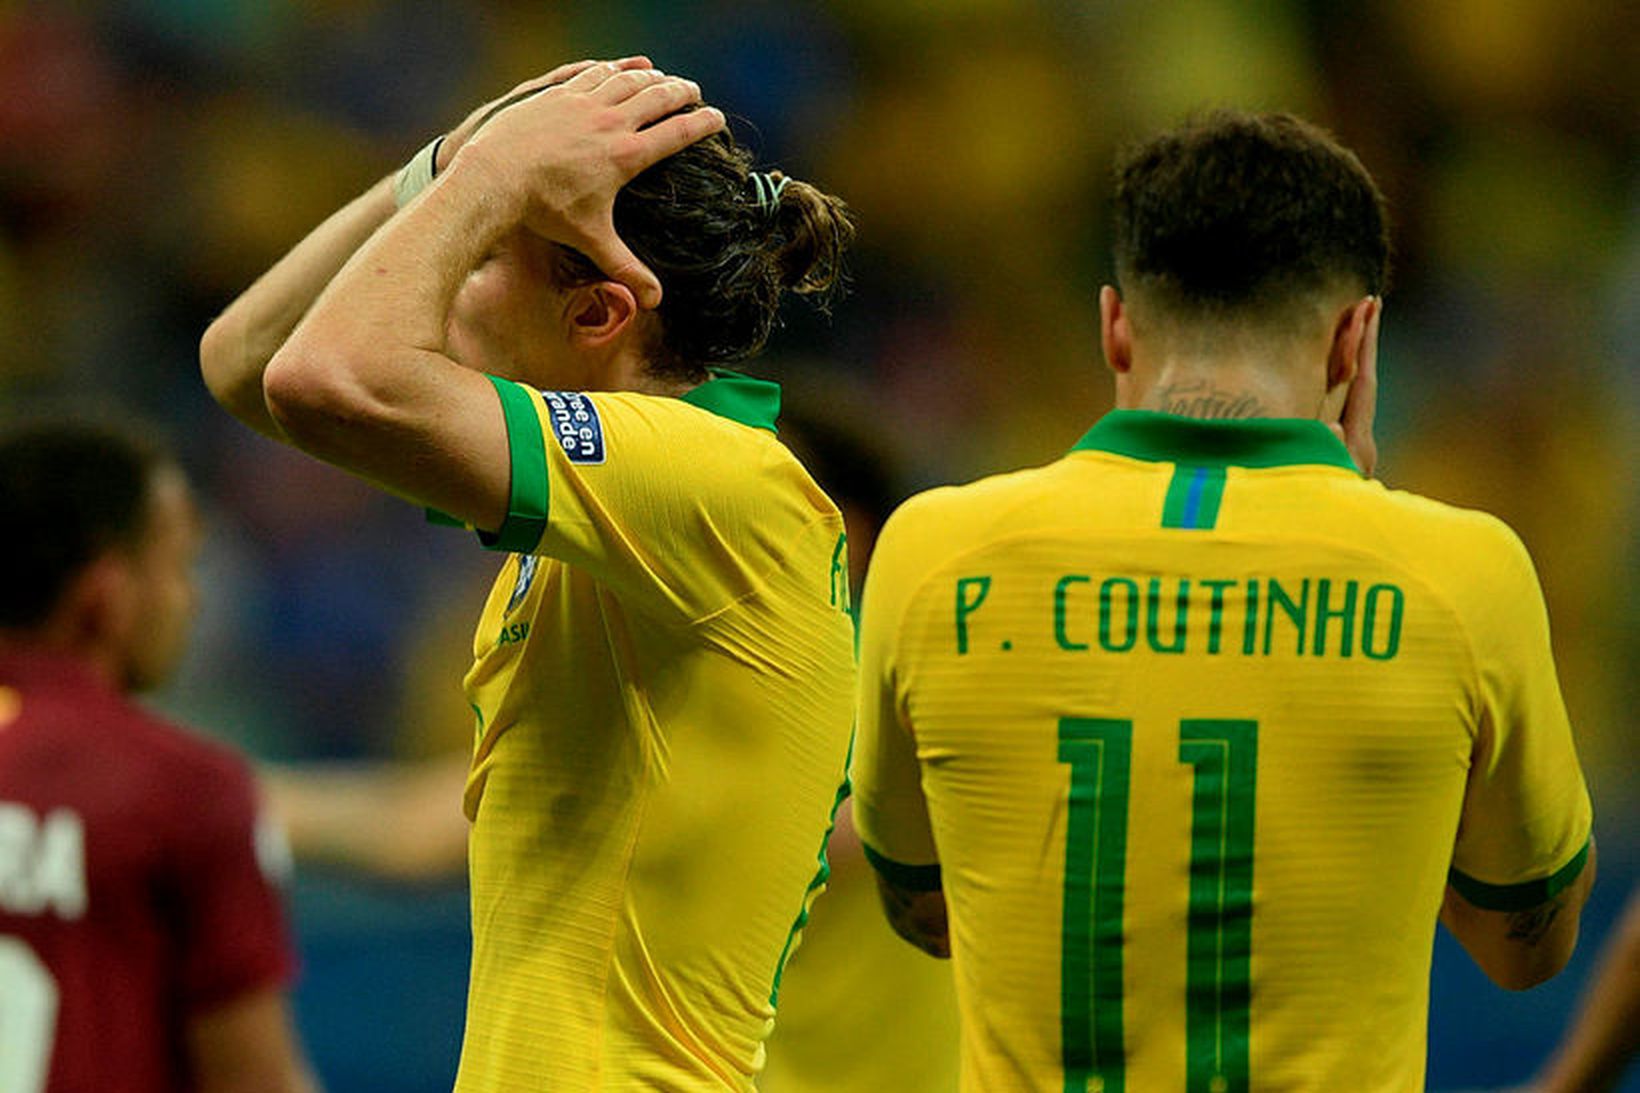 Brasilíumennirnir Filipe Luis og Philippe Coutinho svekktir í leiknum í …